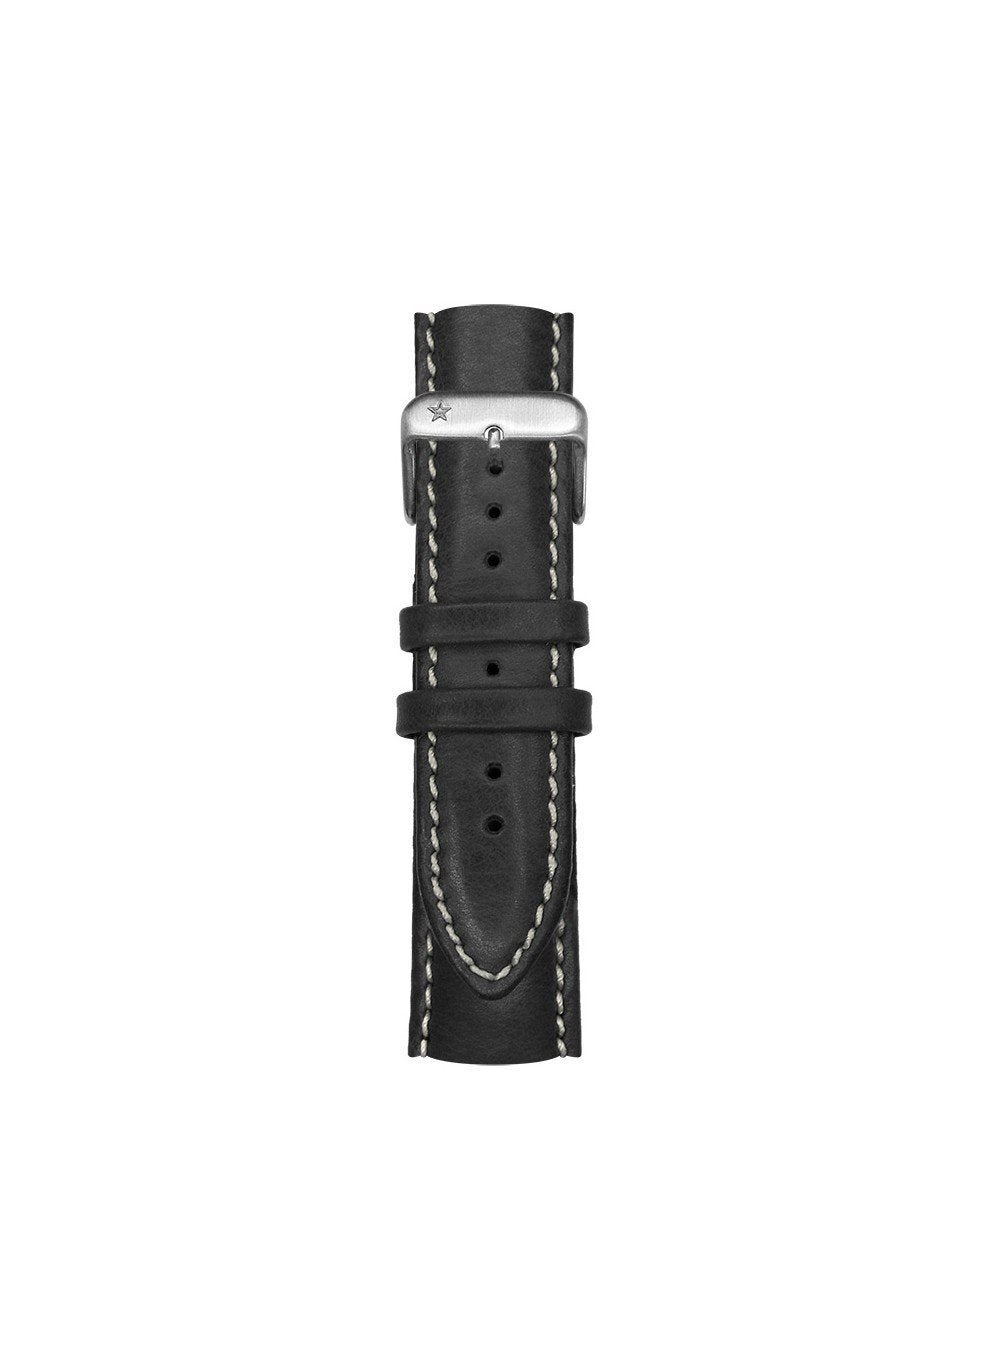 Bracelet classique cuir surpiqué interchangeable 22mm - oxygen watch